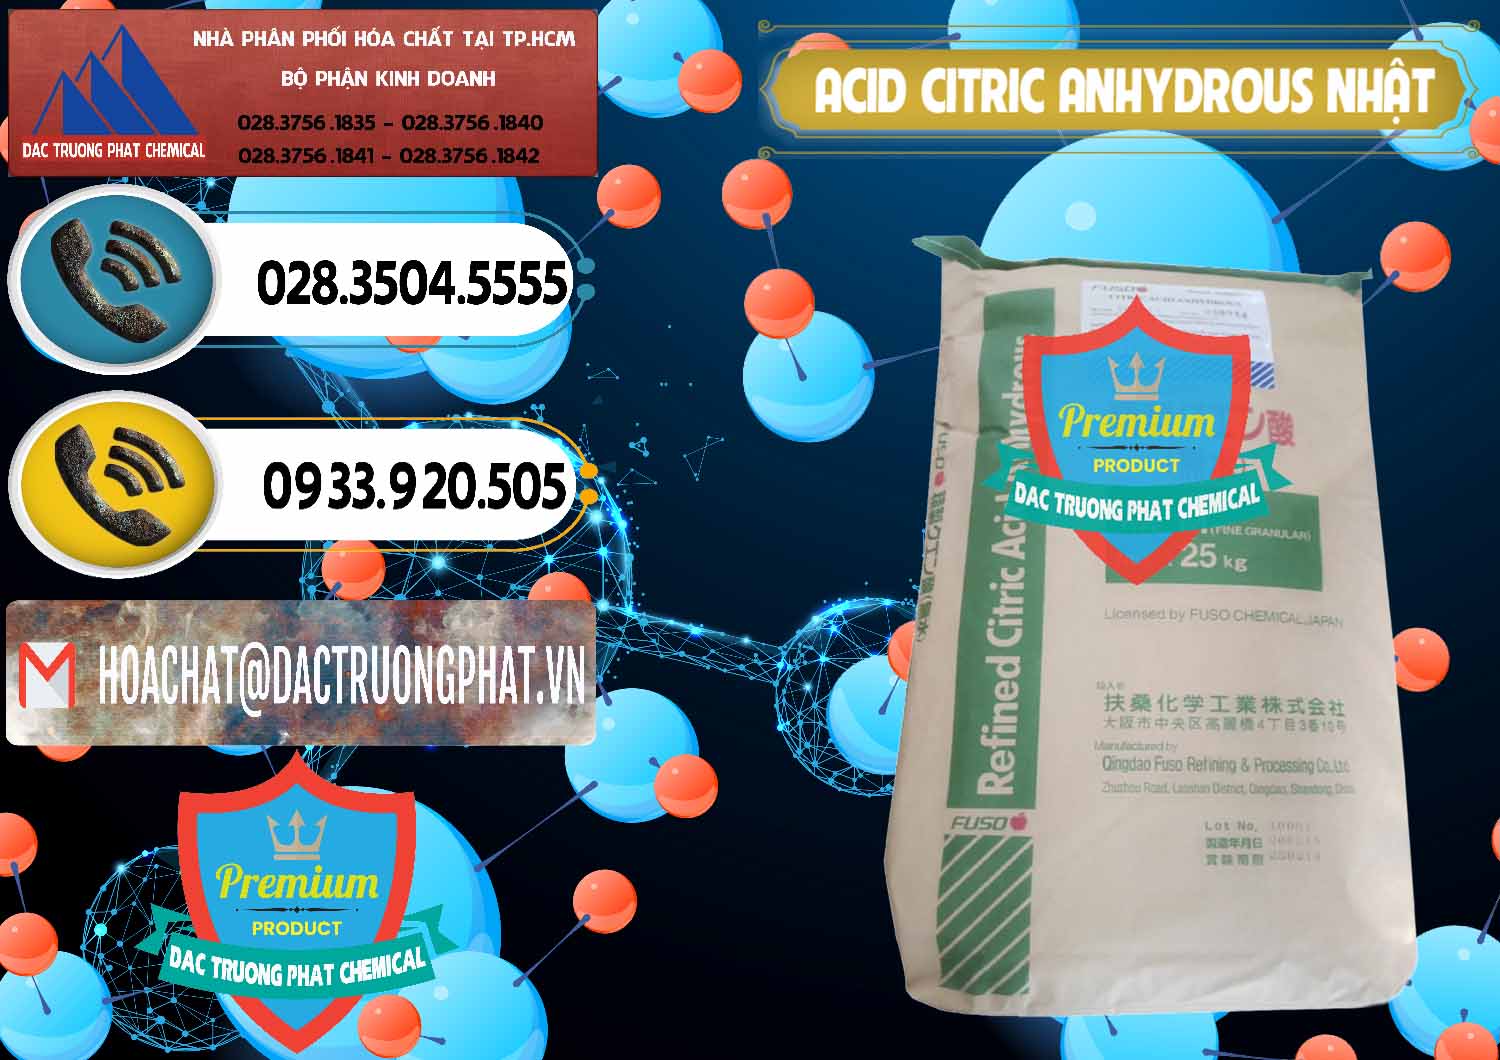 Công ty chuyên bán & phân phối Acid Citric - Axit Citric Anhydrous FUSO Nhật Japan - 0439 - Cty kinh doanh và phân phối hóa chất tại TP.HCM - hoachatdetnhuom.vn